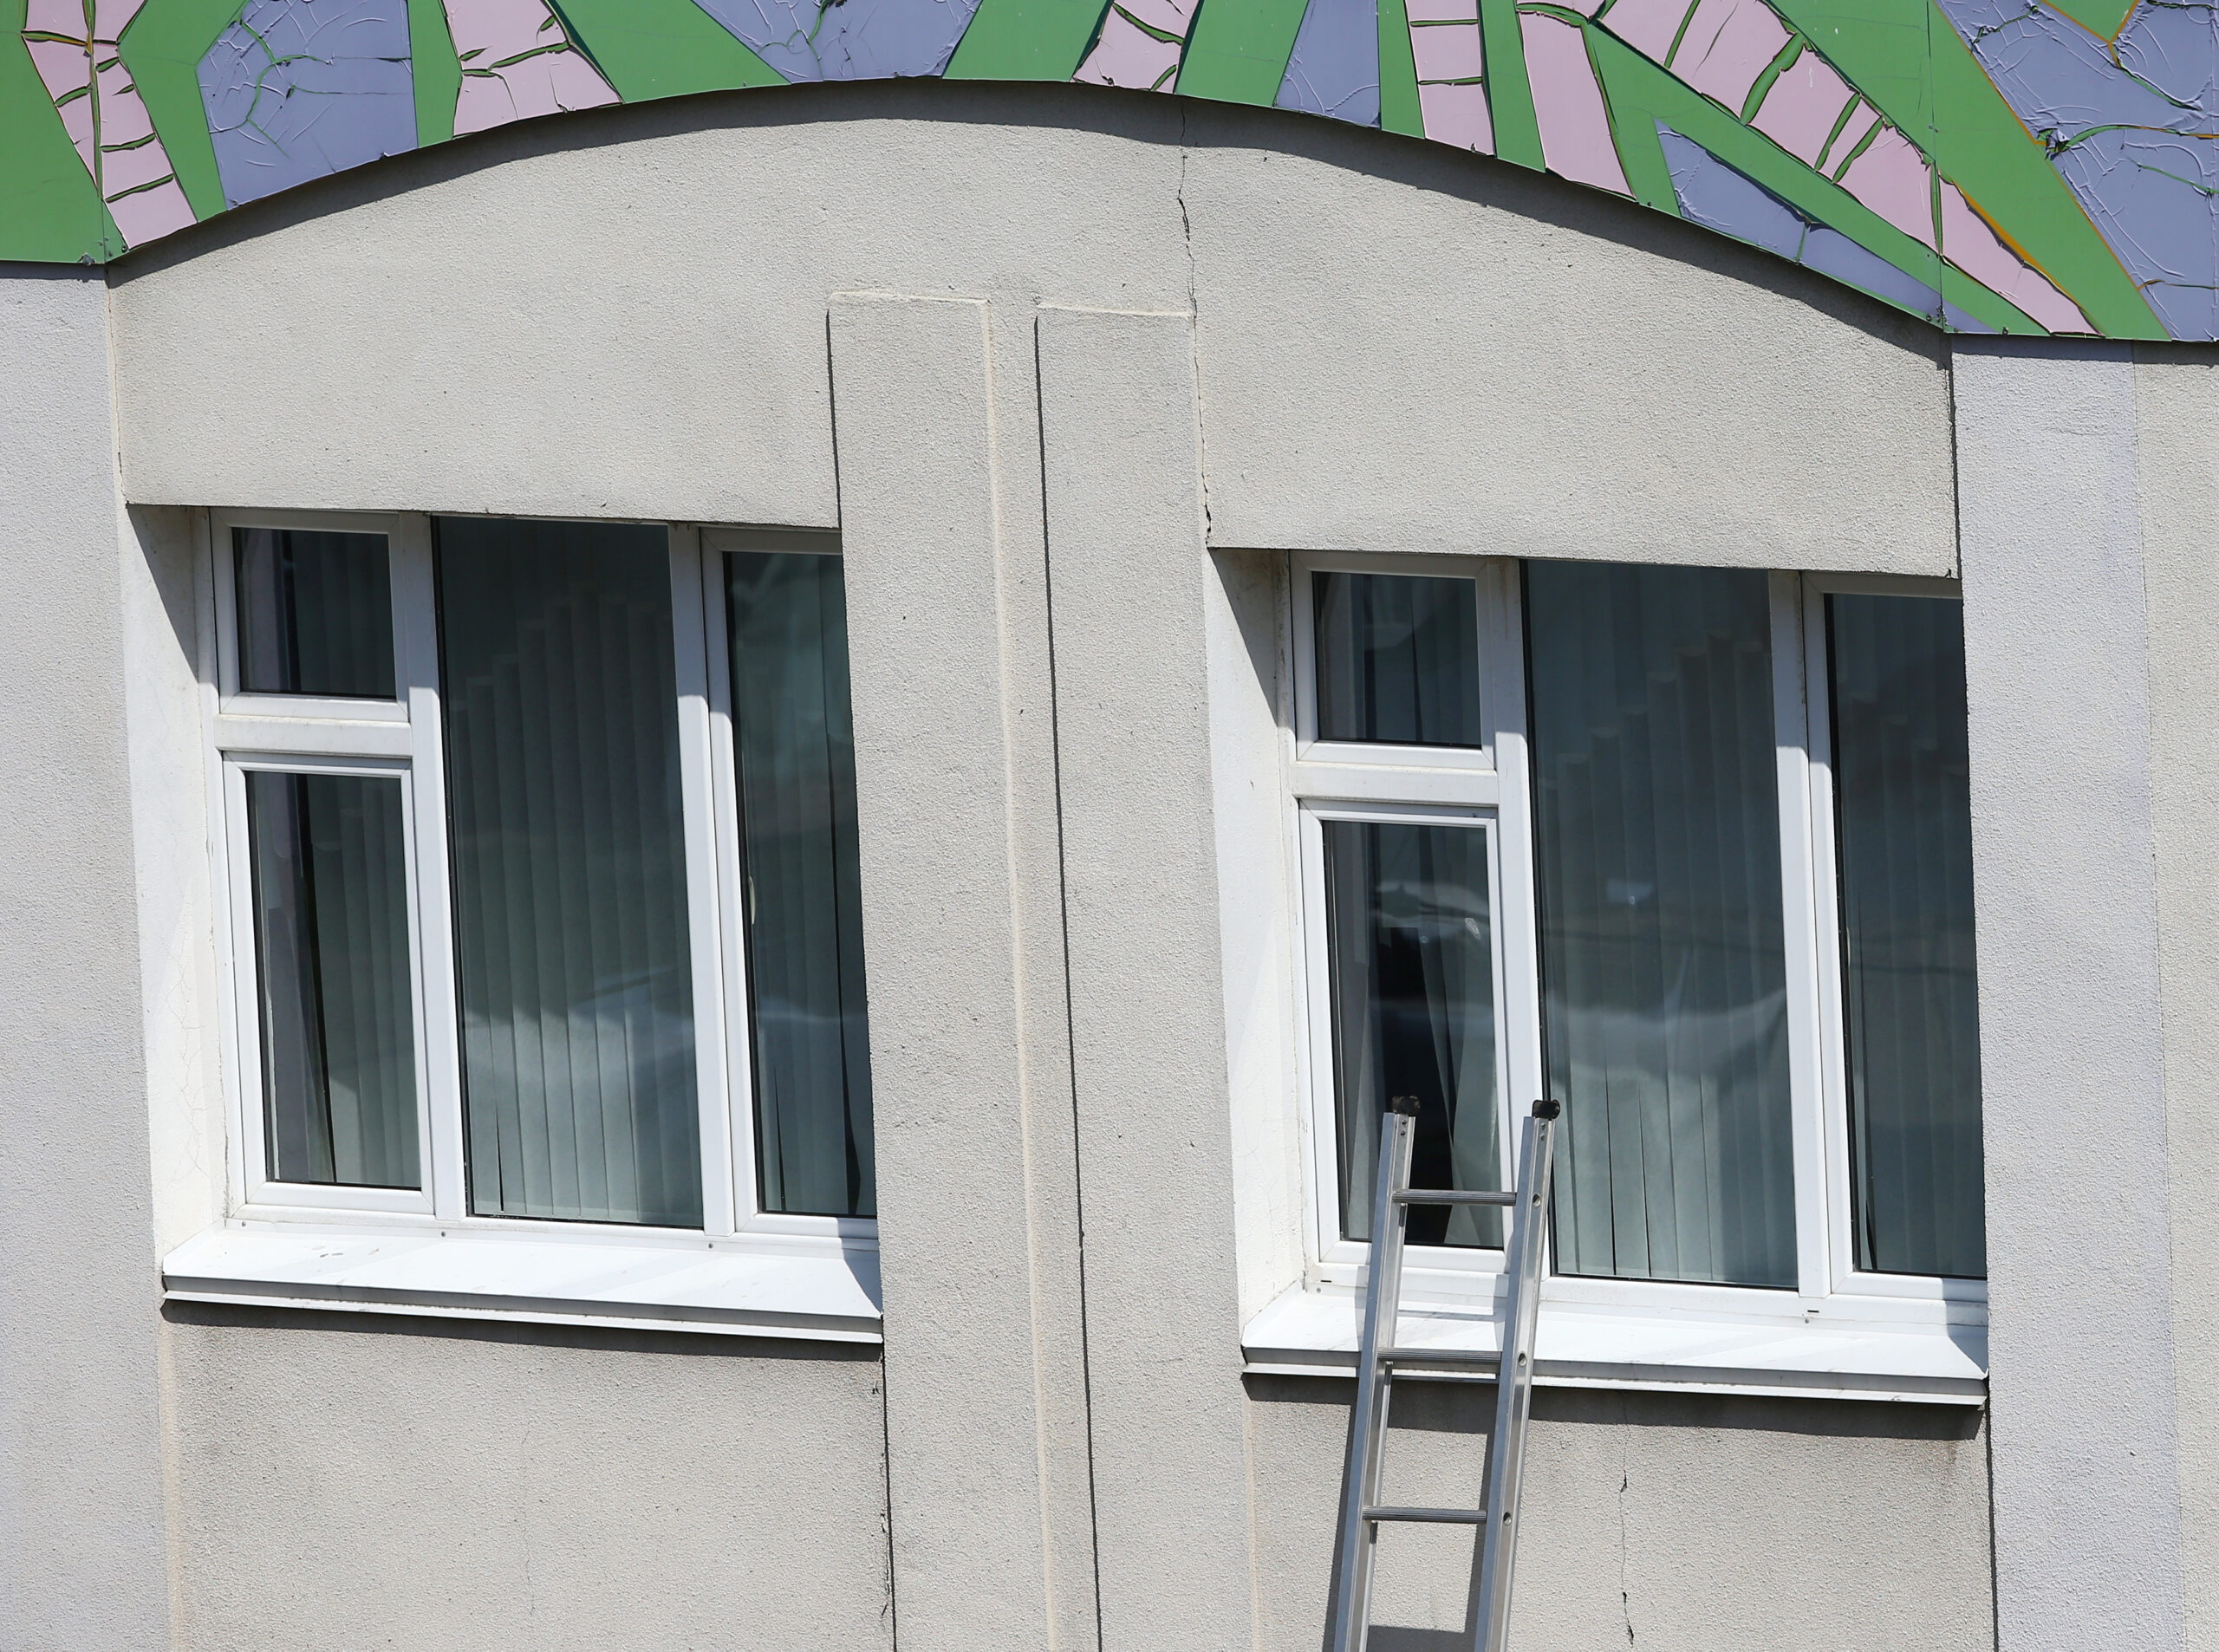 Лестница, приставленная к окну гиманзии. Фото Yegor Aleyev / TASS / Scanpix / Leta